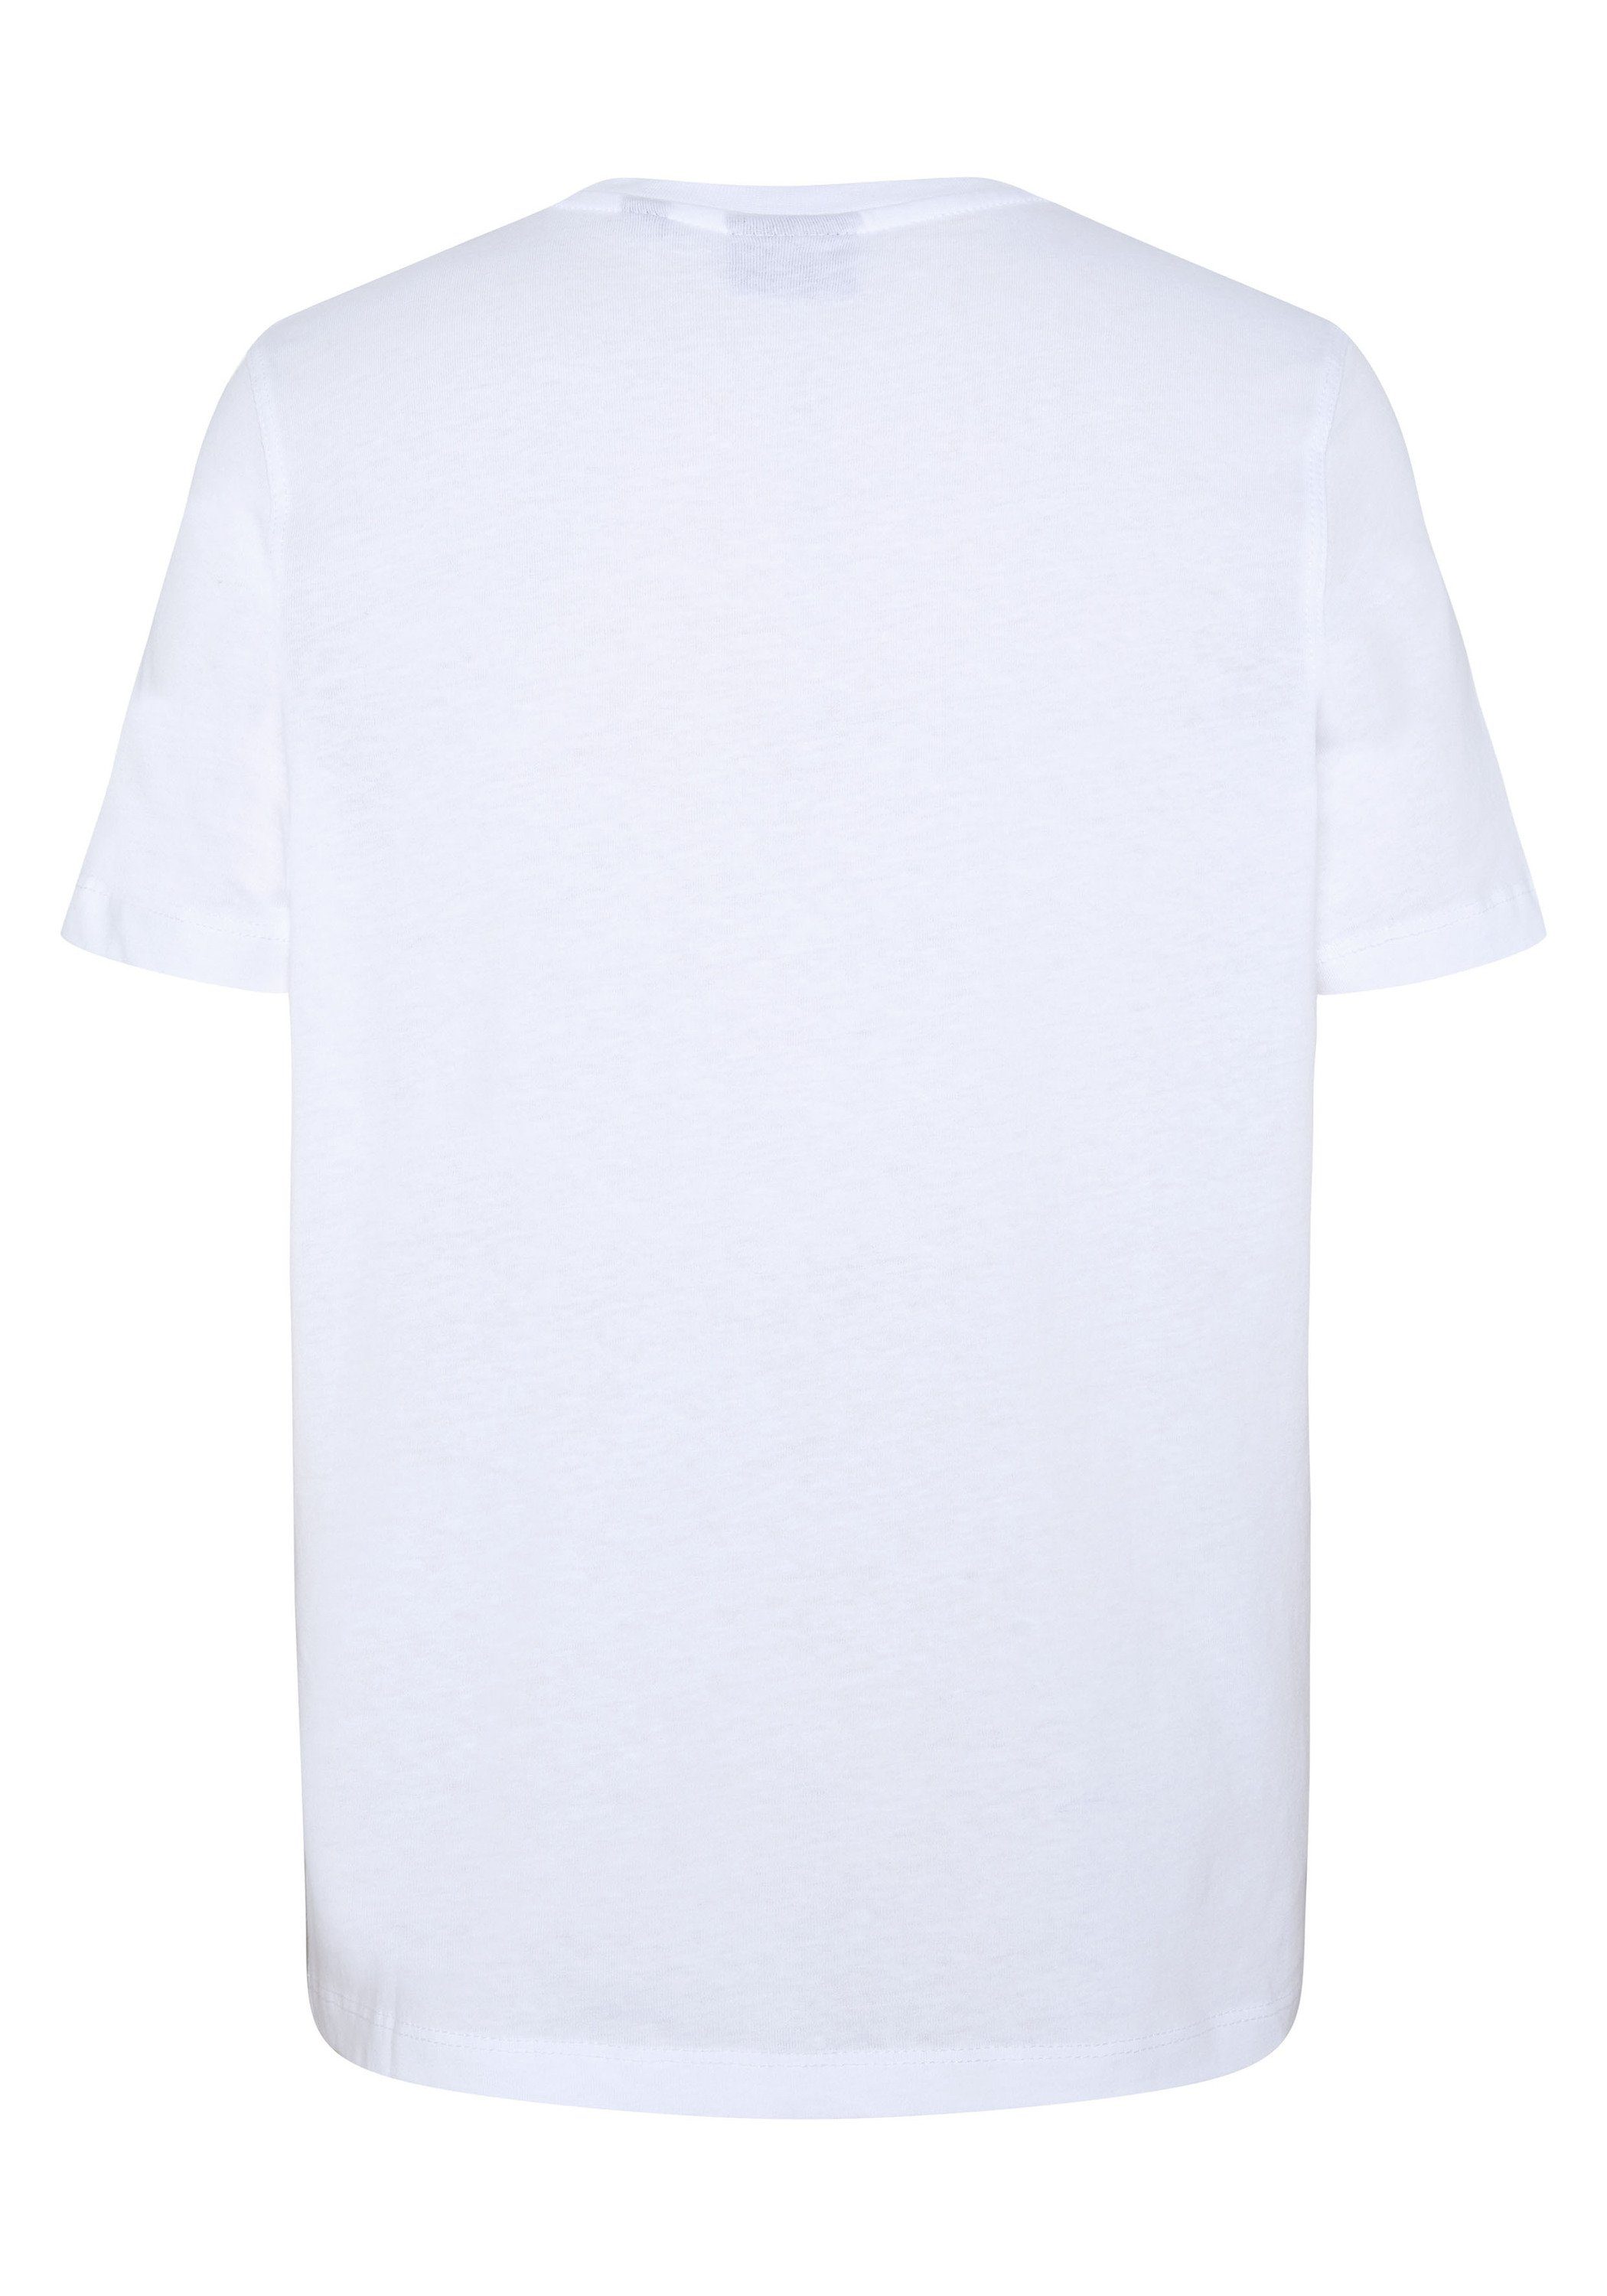 White Print-Shirt Baumwolle aus reiner Polo Sylt 11-0601 Bright